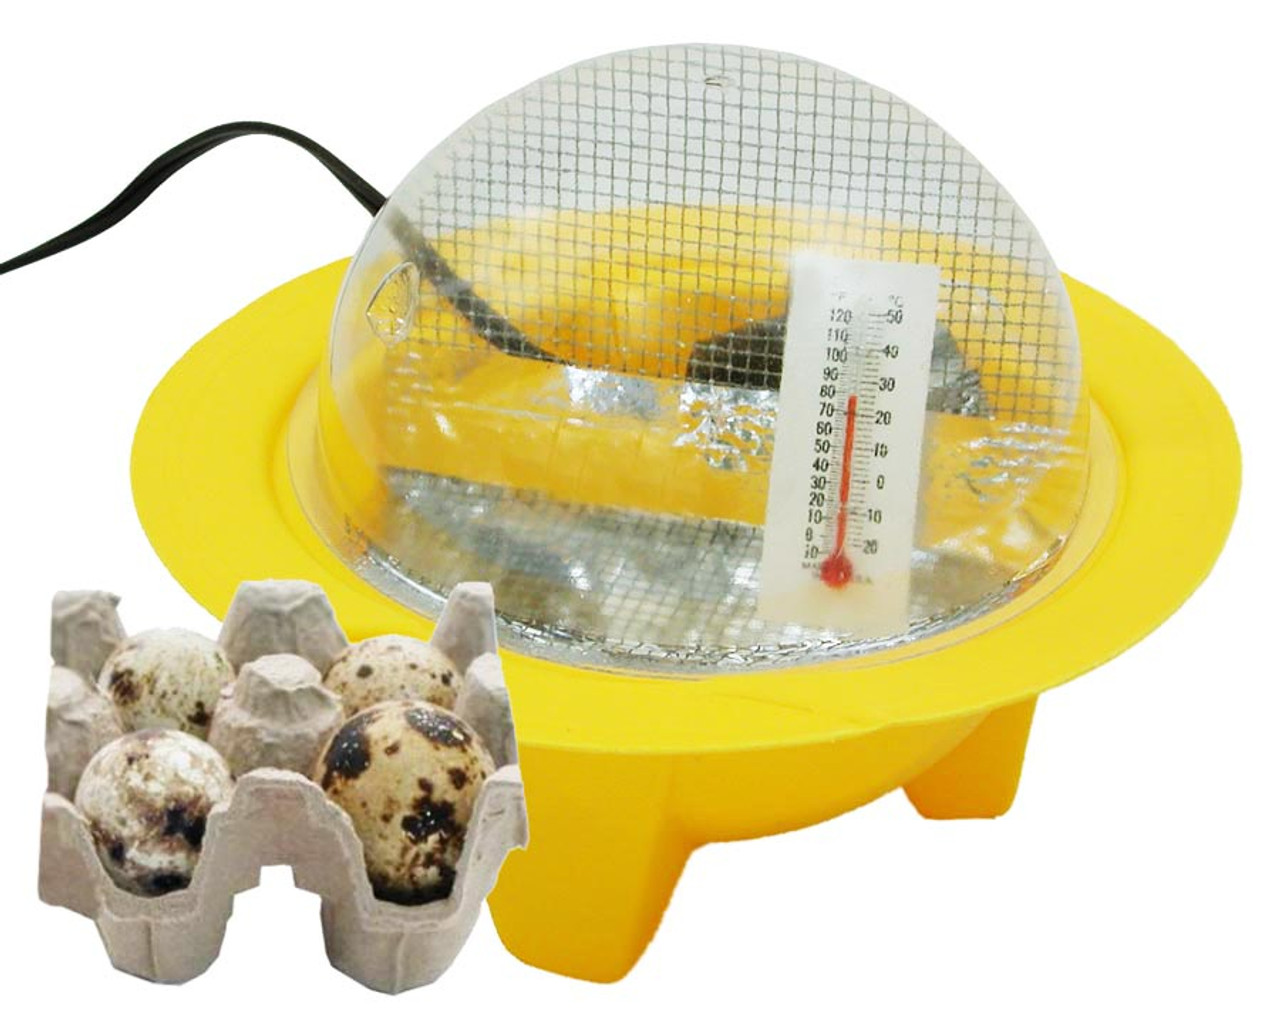 operating an hova bator 2362n incubator for eggs